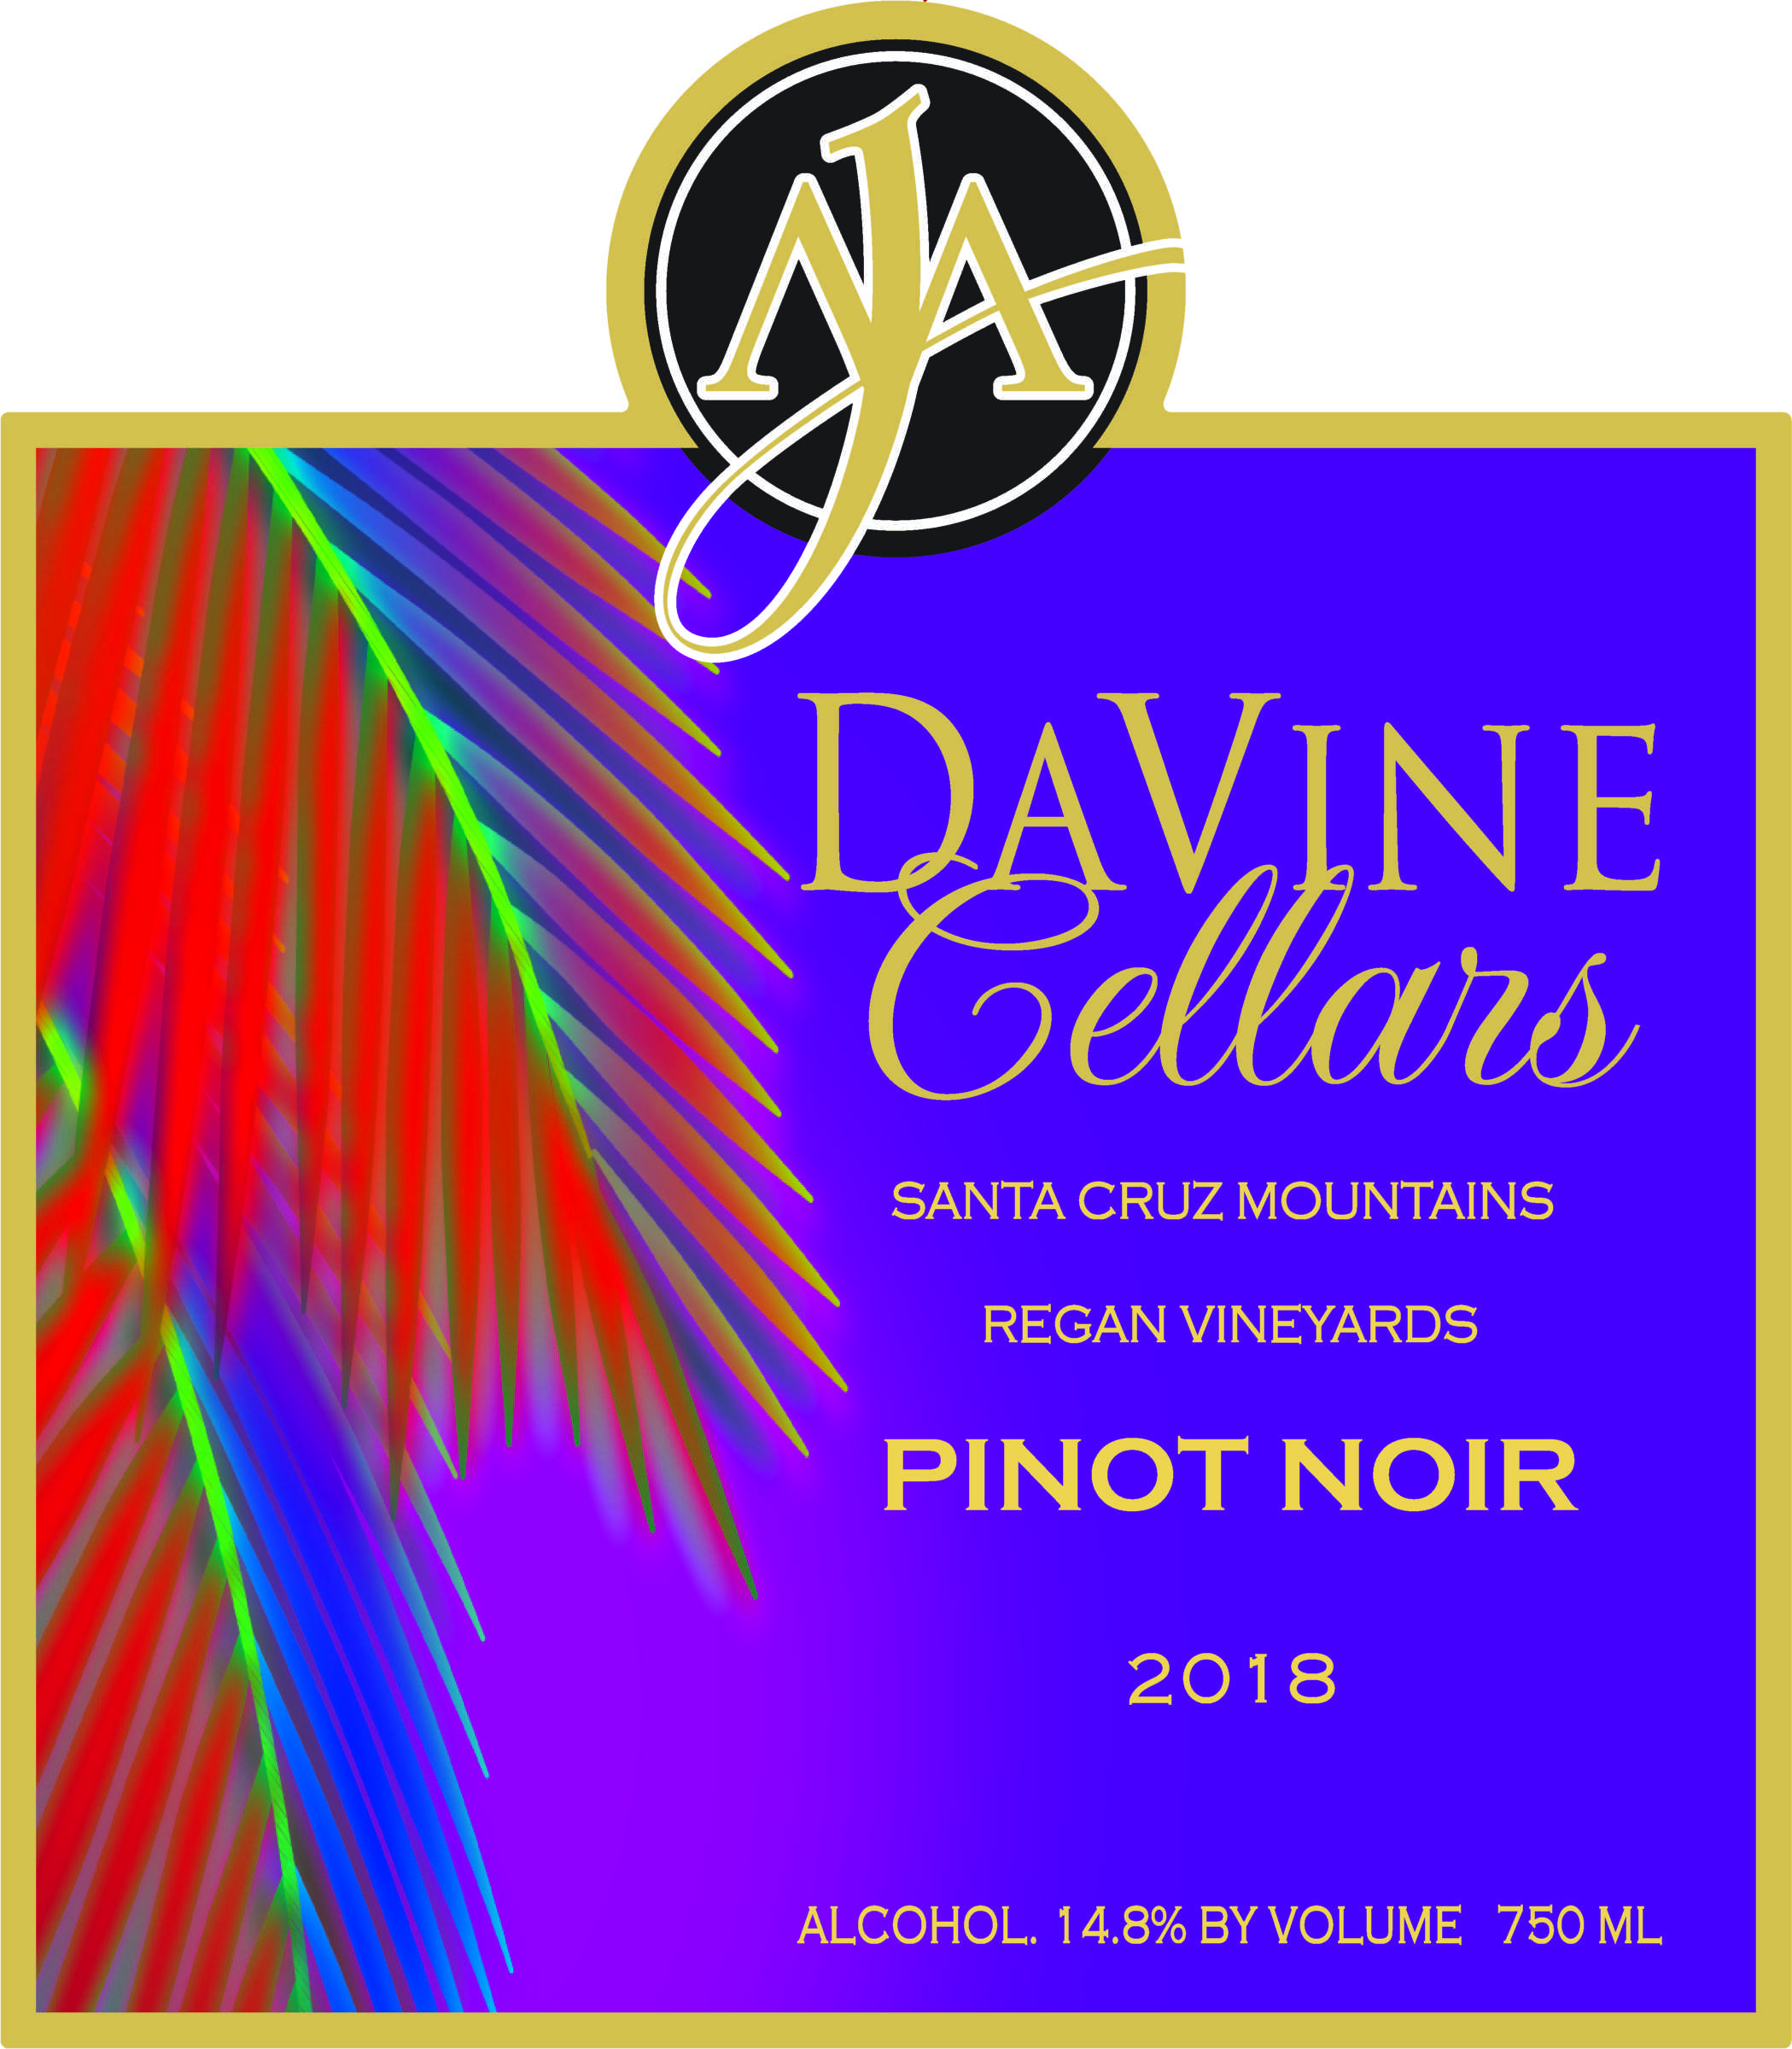 Product Image for 2018 Santa Cruz Mountains, Regan Vineyards Pinot Noir "Bashful"